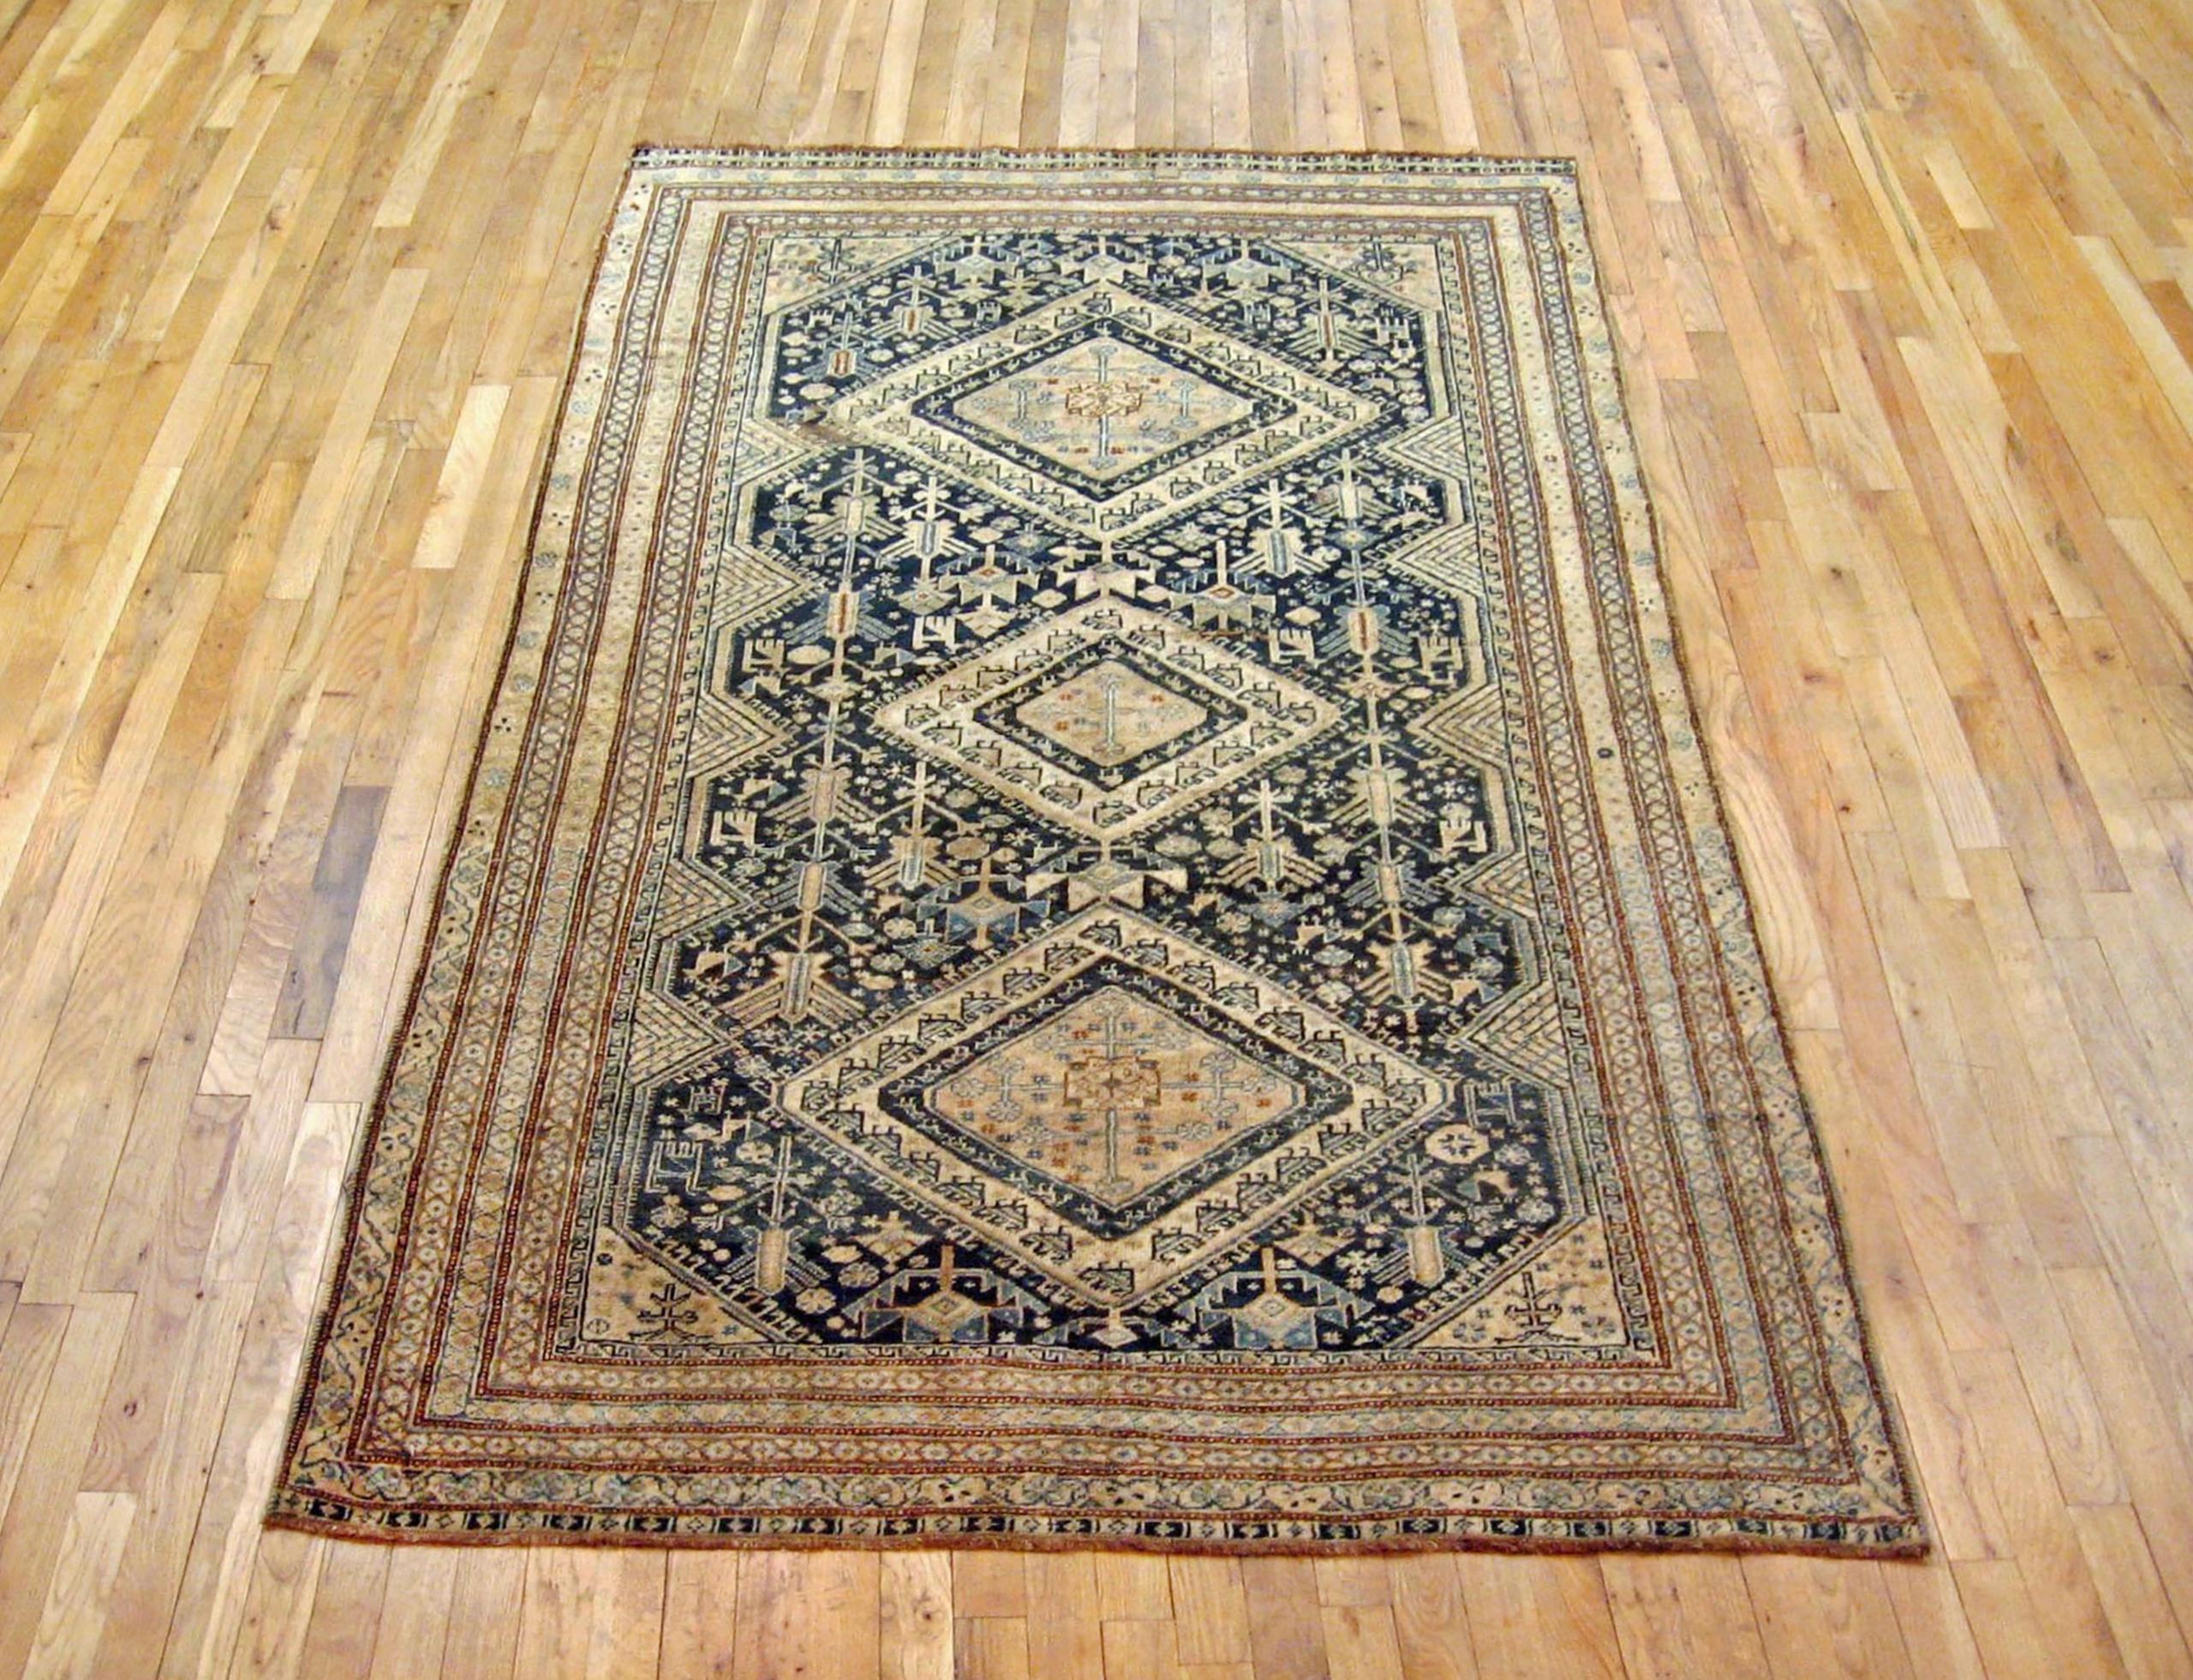 Antique Persian Shiraz oriental rug, in small size.

An antique Persian Shiraz oriental rug, size 7'9